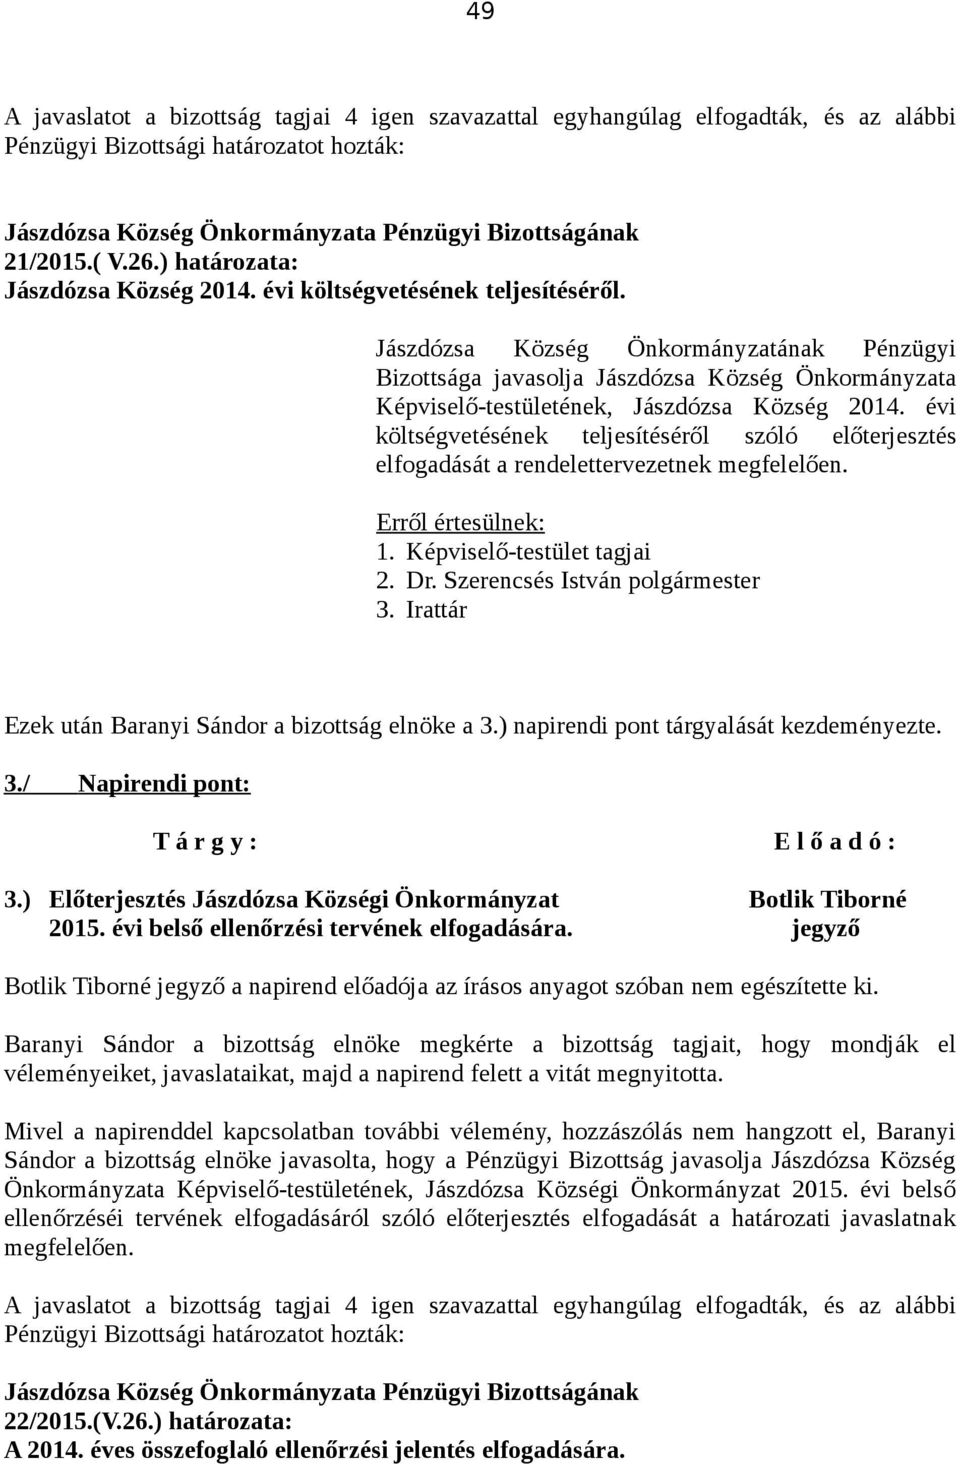 ) Előterjesztés Jászdózsa Községi Önkormányzat Botlik Tiborné 2015. évi belső ellenőrzési tervének elfogadására.